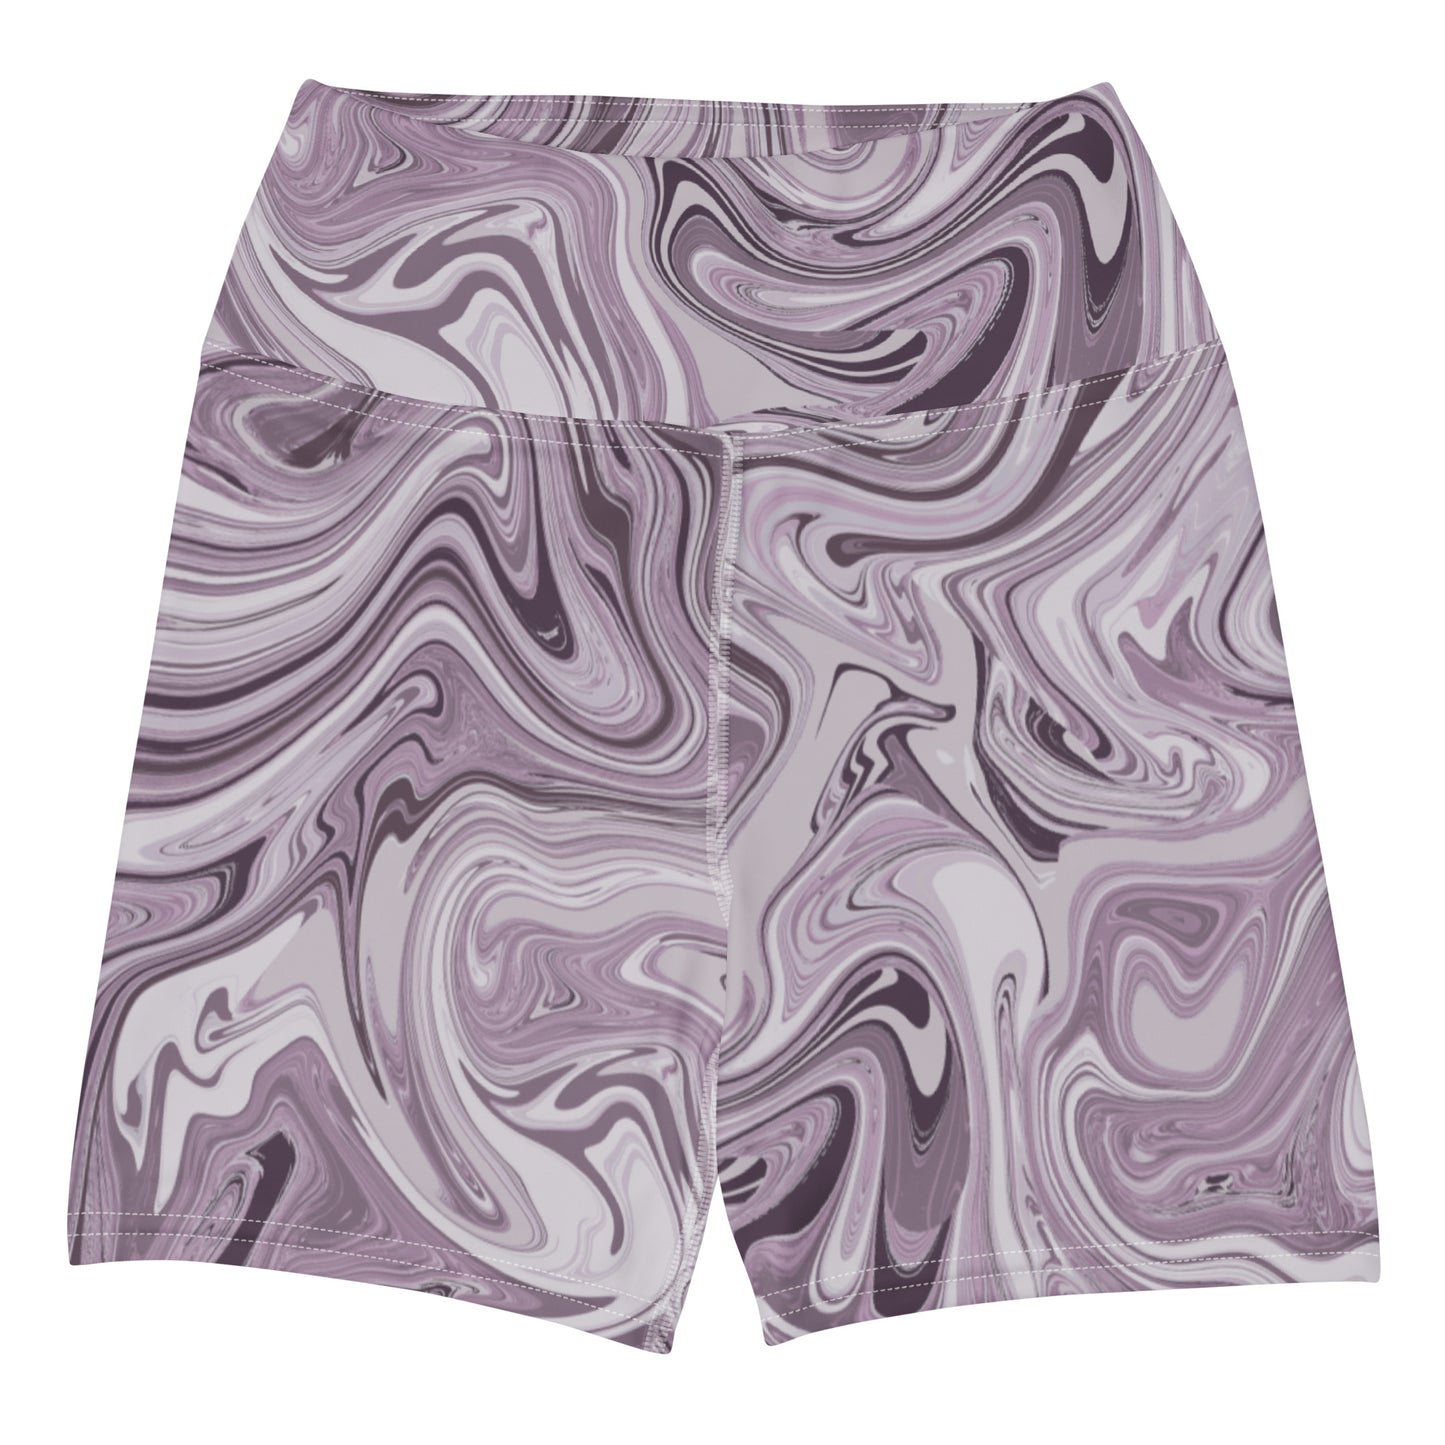 Maggiore Marble Yoga Shorts - Lilac